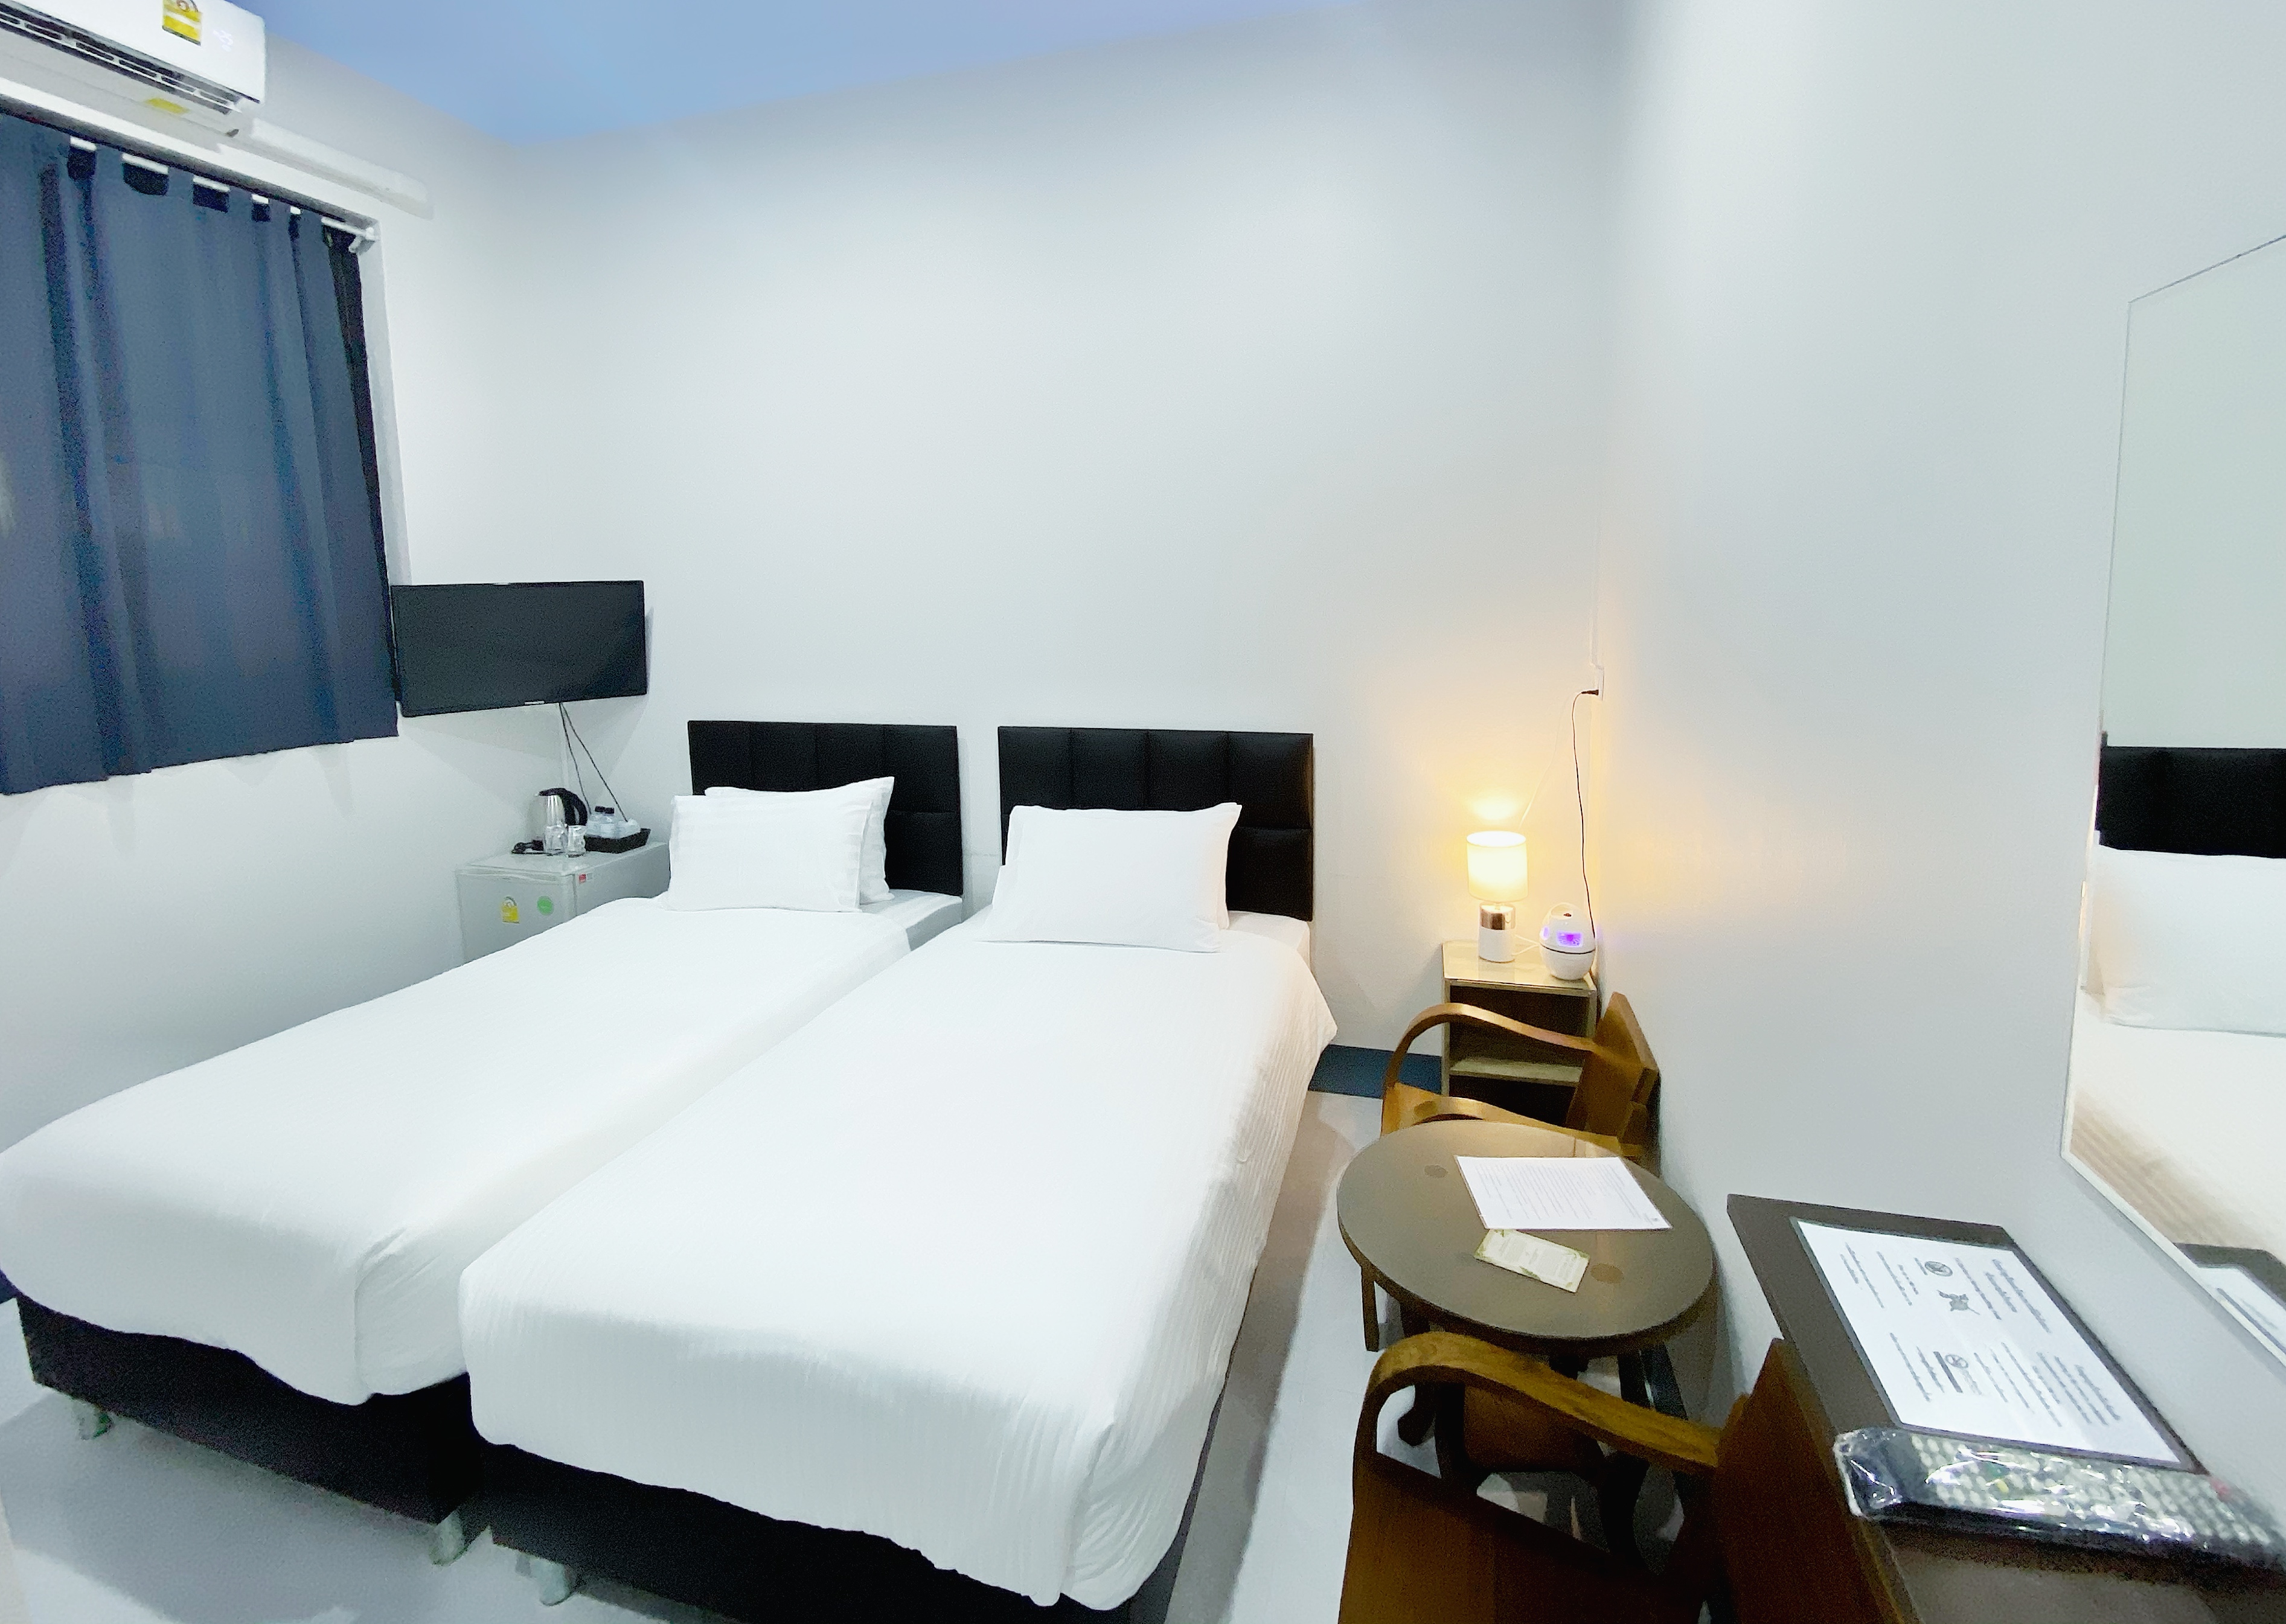 รีวิวโรงแรมอุดมสุข - โปรโมชั่นโรงแรม 3 ดาวในตำบล พิมาน | Trip.com